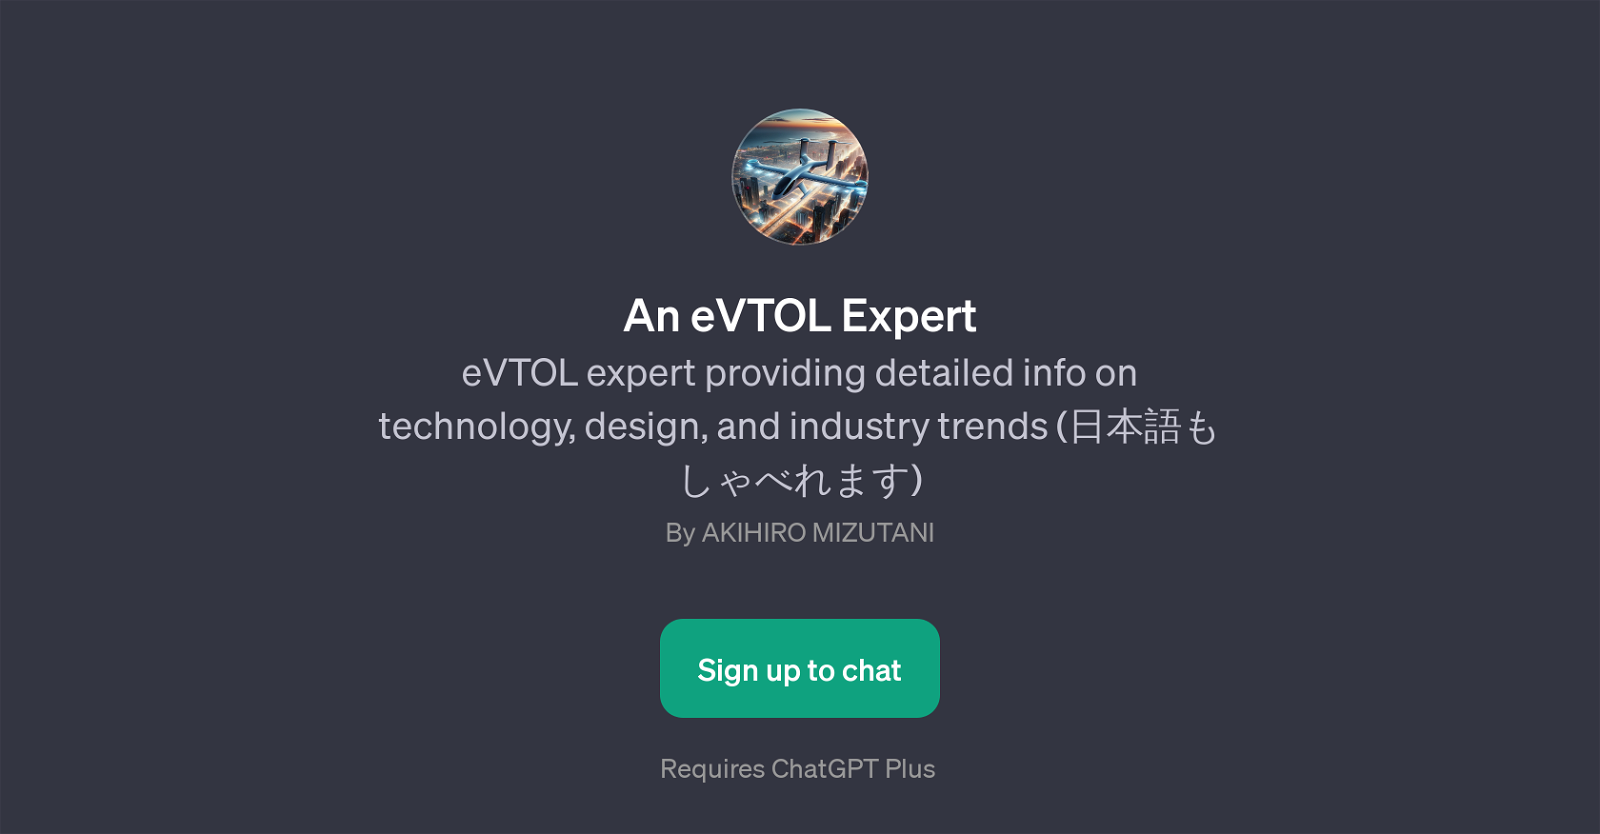 An eVTOL Expert website